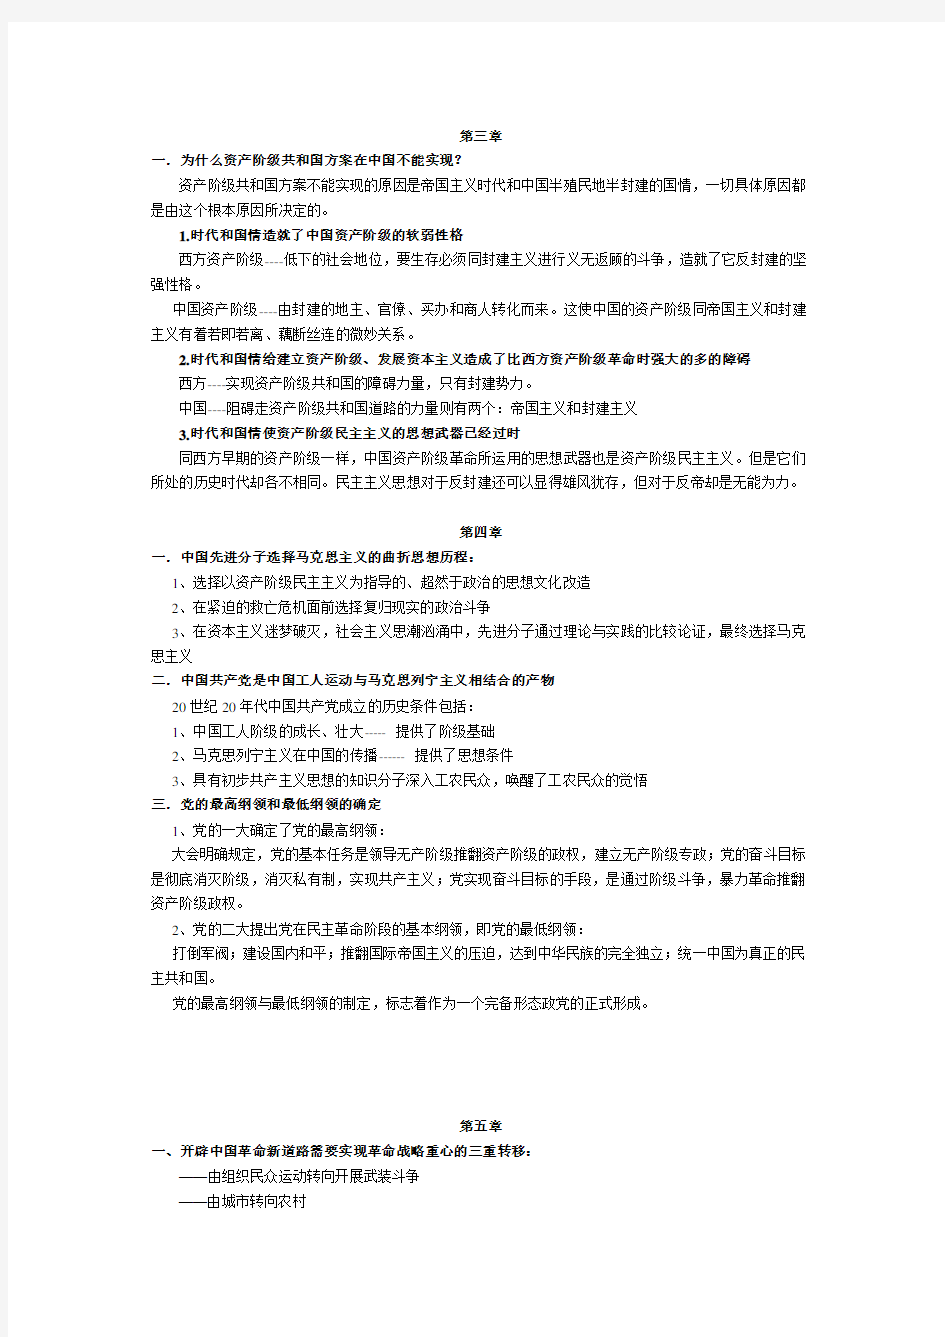 近代史纲要课堂笔记(1-7章) (1)